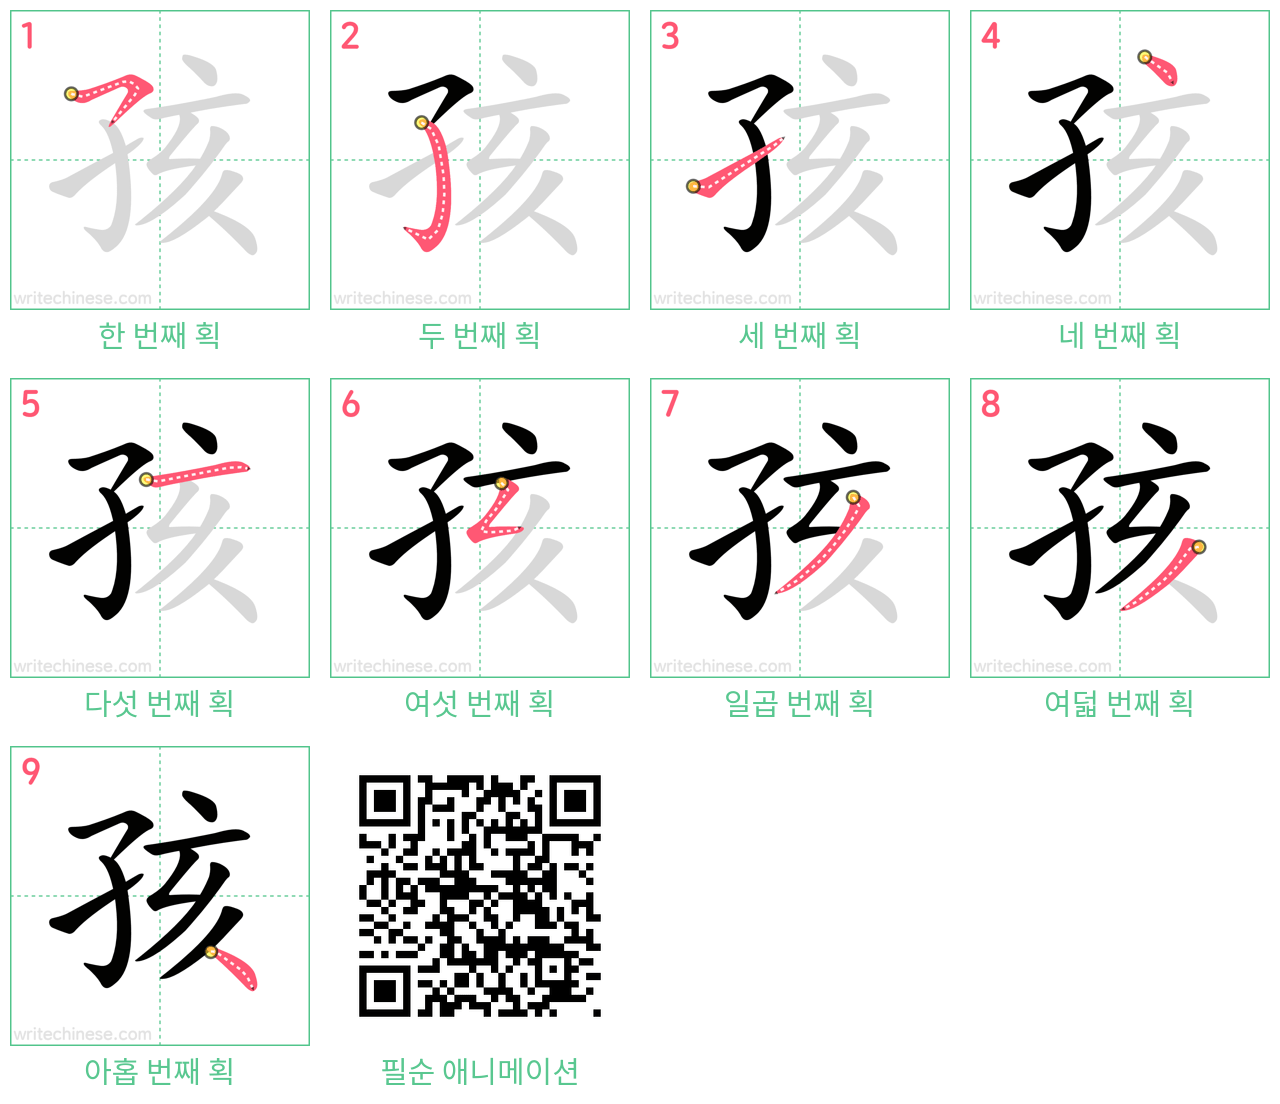 孩 step-by-step stroke order diagrams